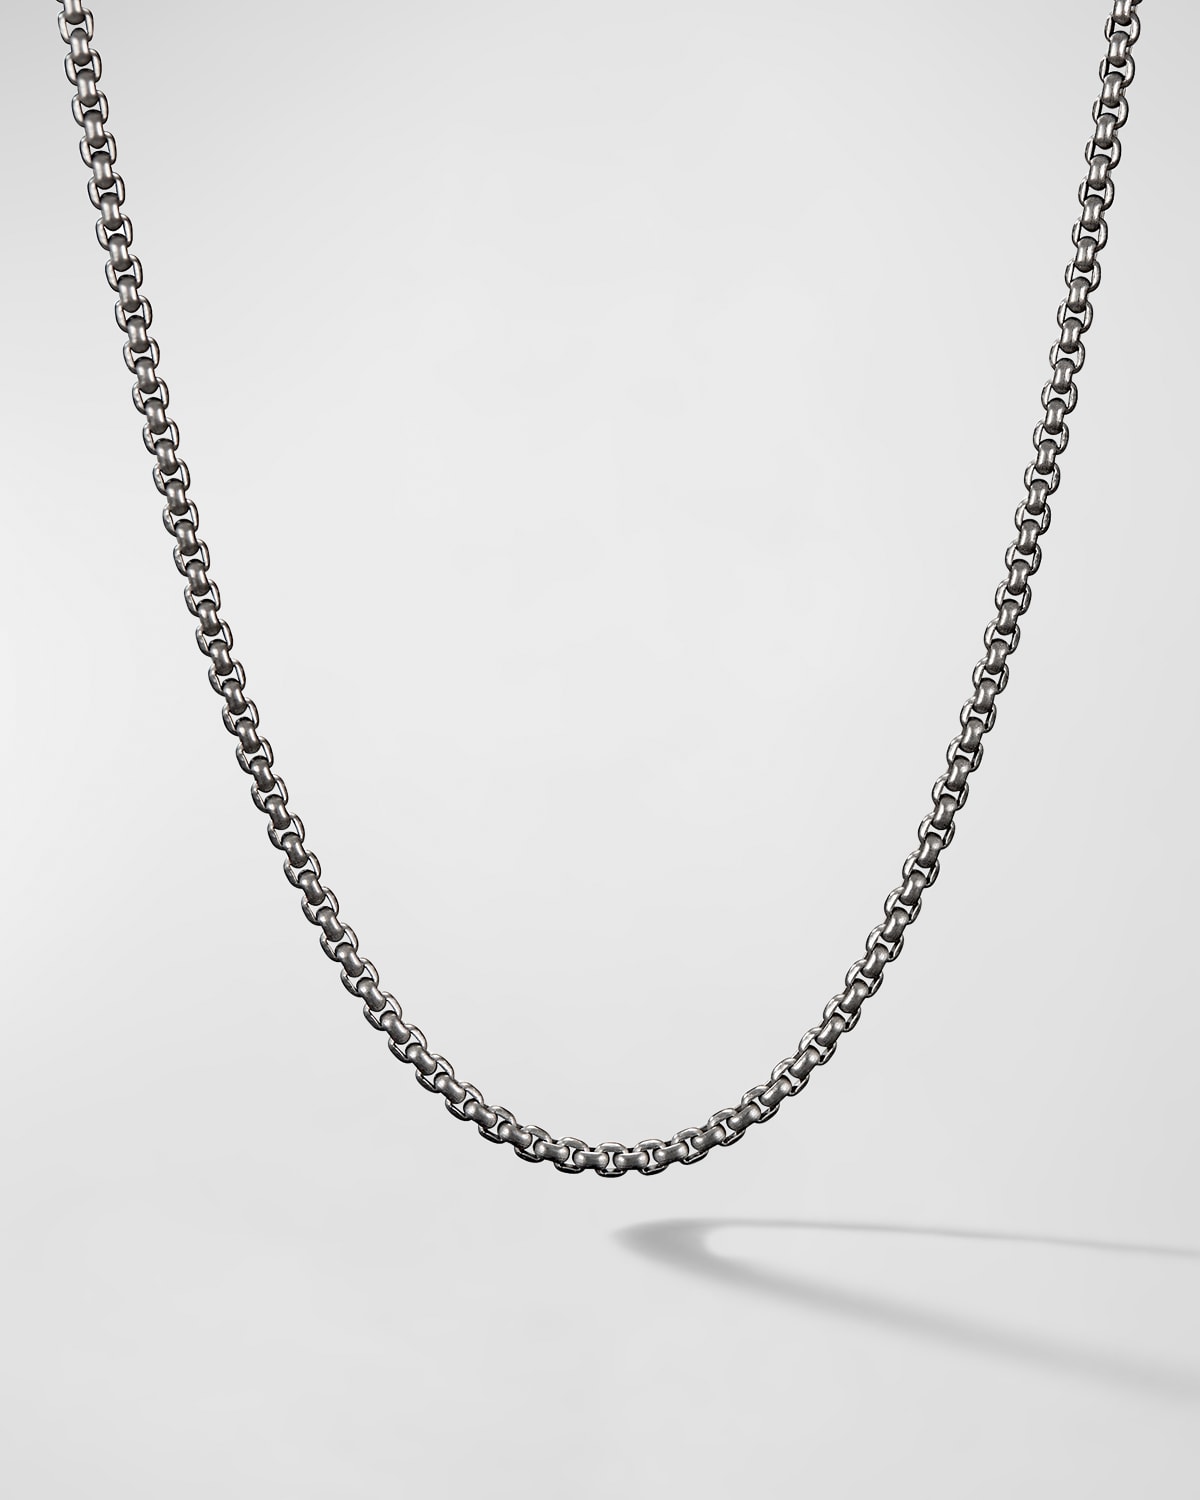 Men's Box Chain Necklace in Gray Titanium, 2.7mm, 24"L